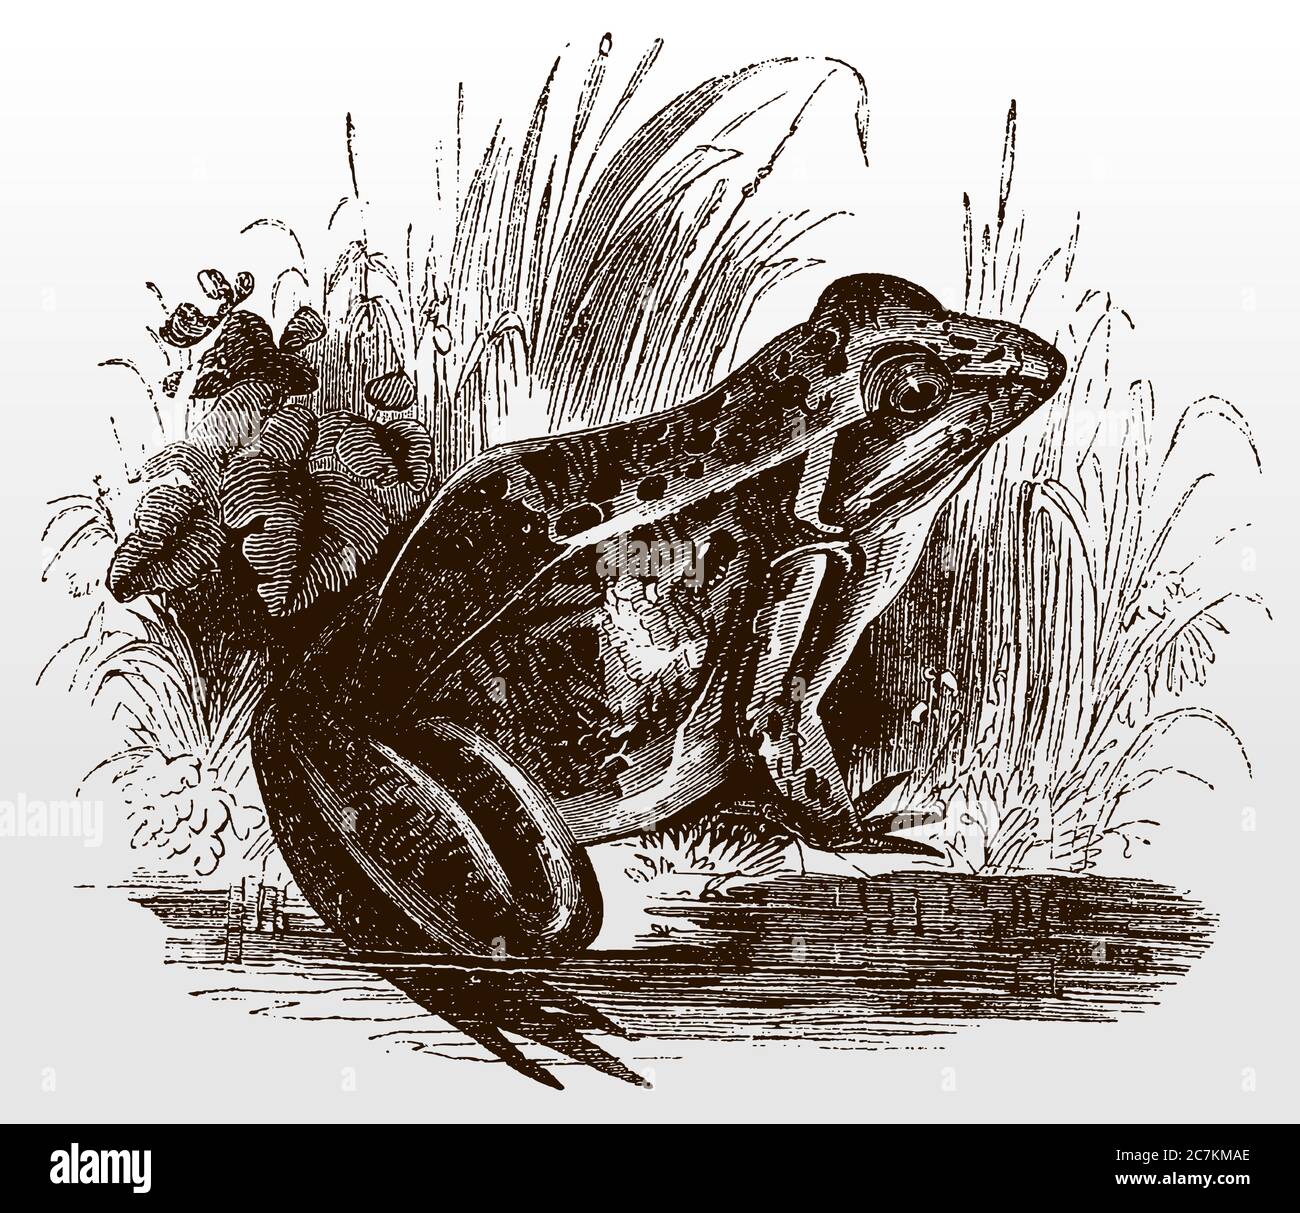 Rana comune, rana temporaria in vista laterale seduta sulla riva di uno stagno, dopo un'antica illustrazione del 19 ° secolo Illustrazione Vettoriale